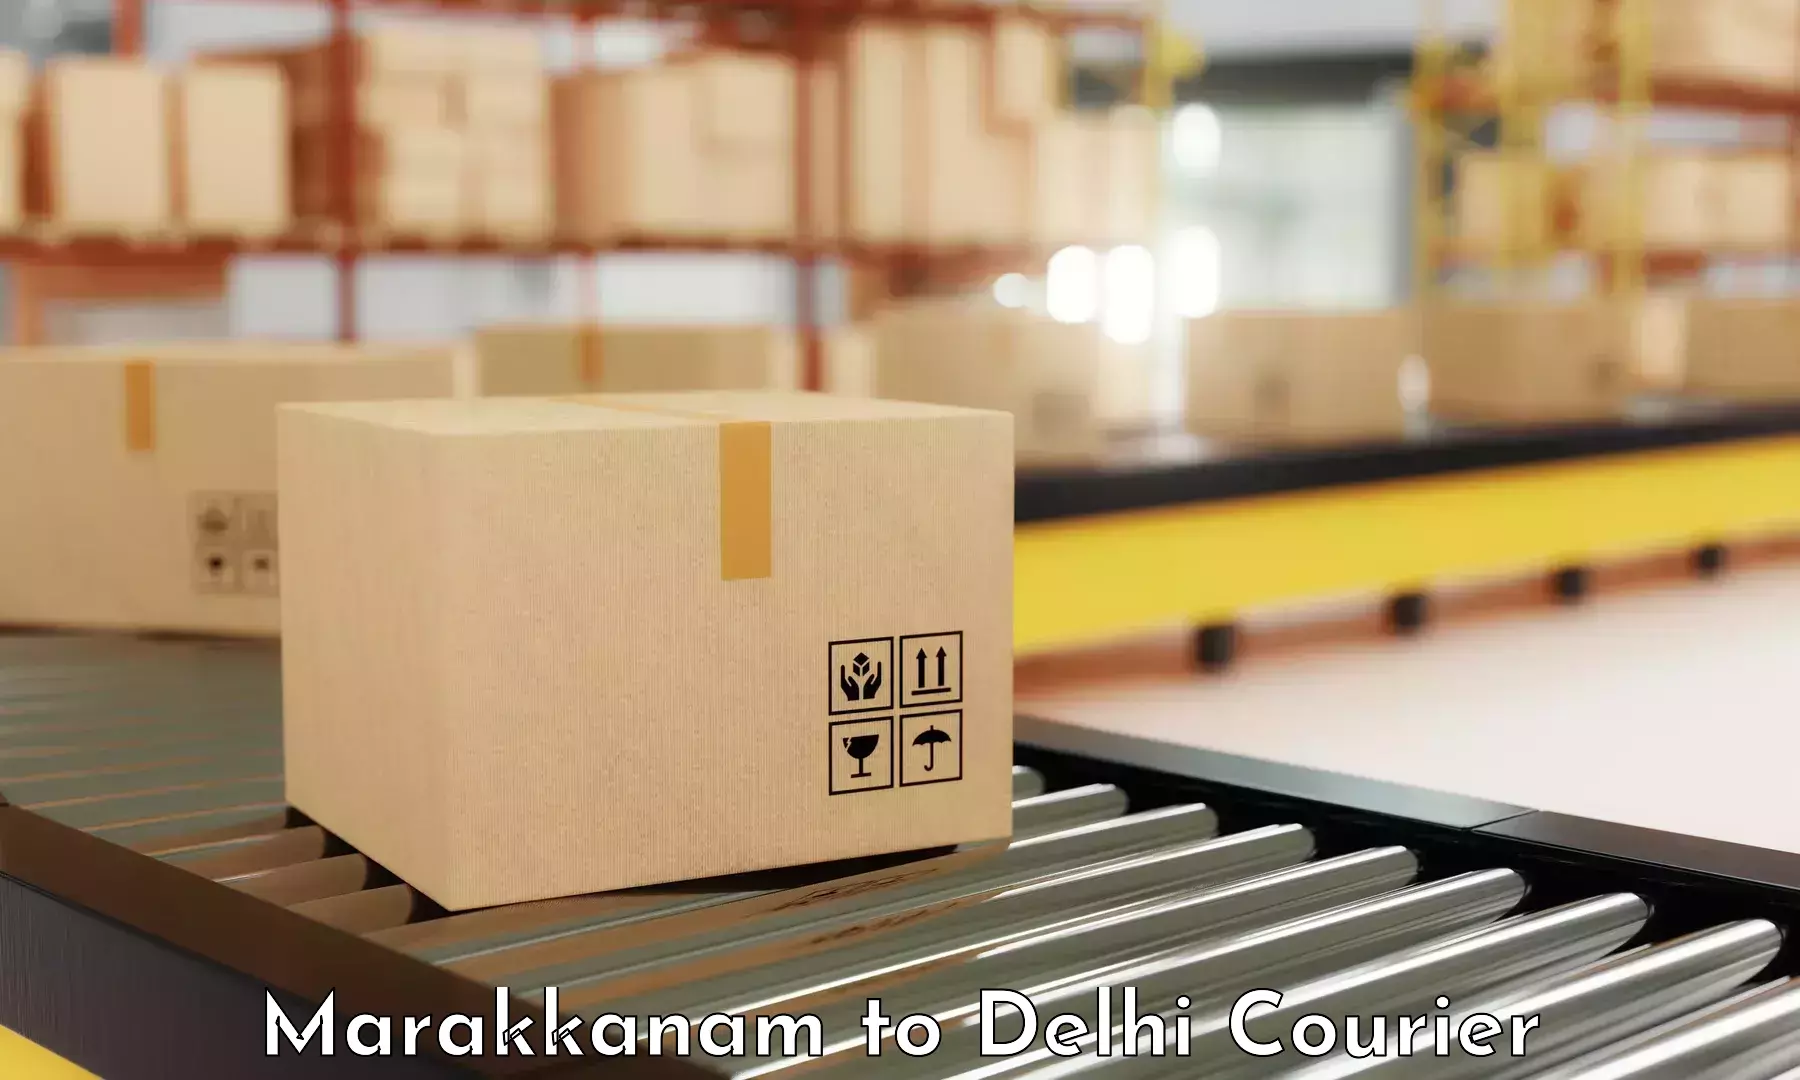 Door-to-door freight service Marakkanam to Naraina Industrial Estate